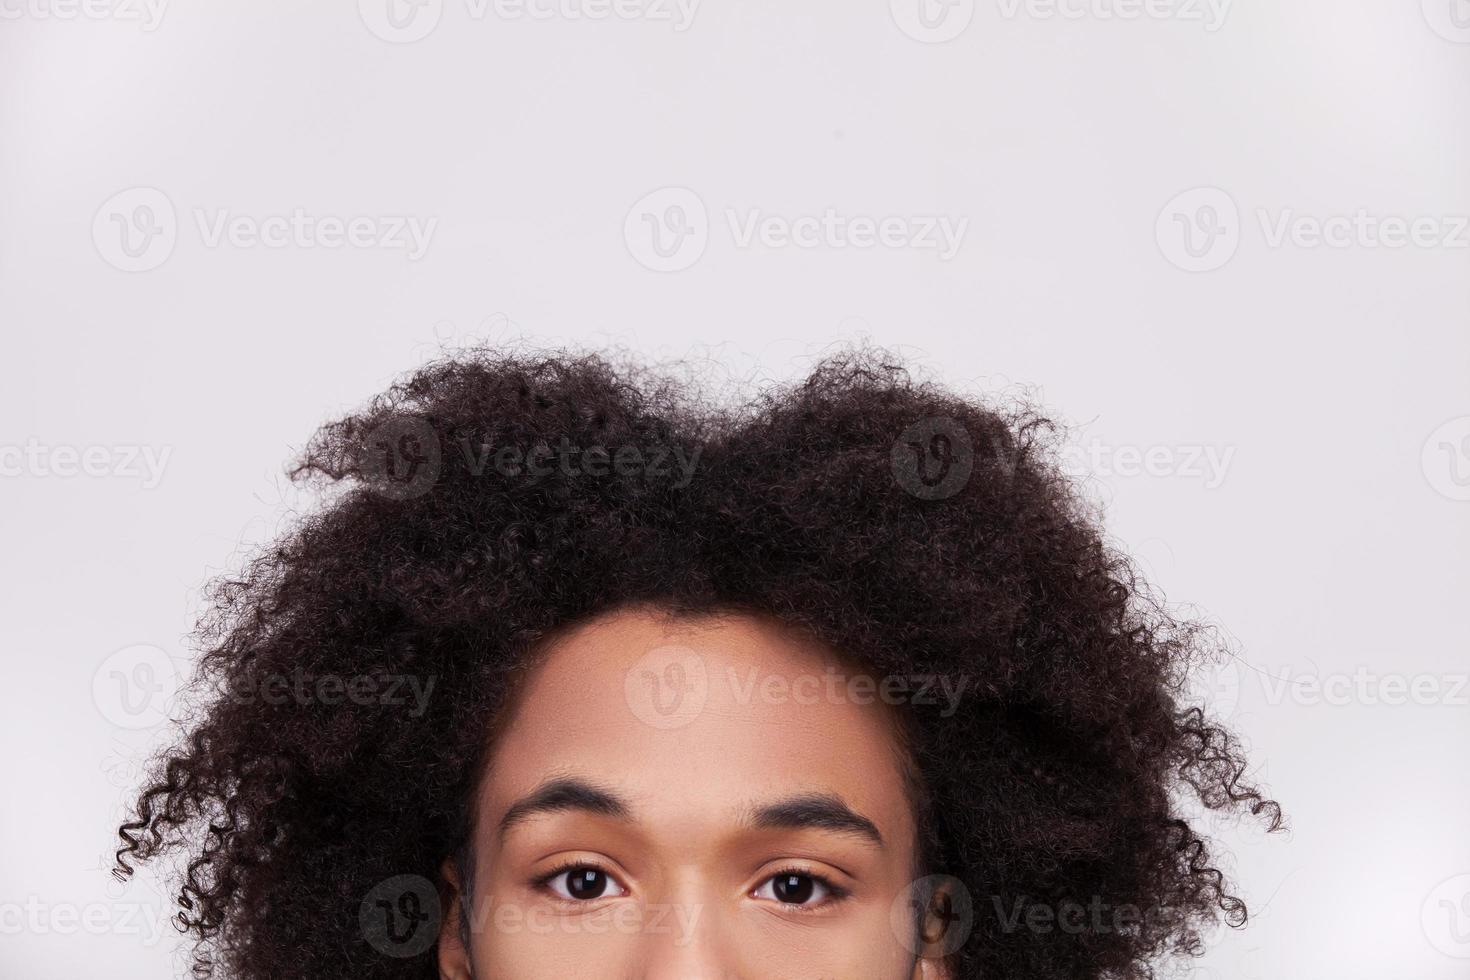 mirada sincera imagen recortada de un alegre adolescente africano mirando la cámara mientras está aislado en un fondo gris foto